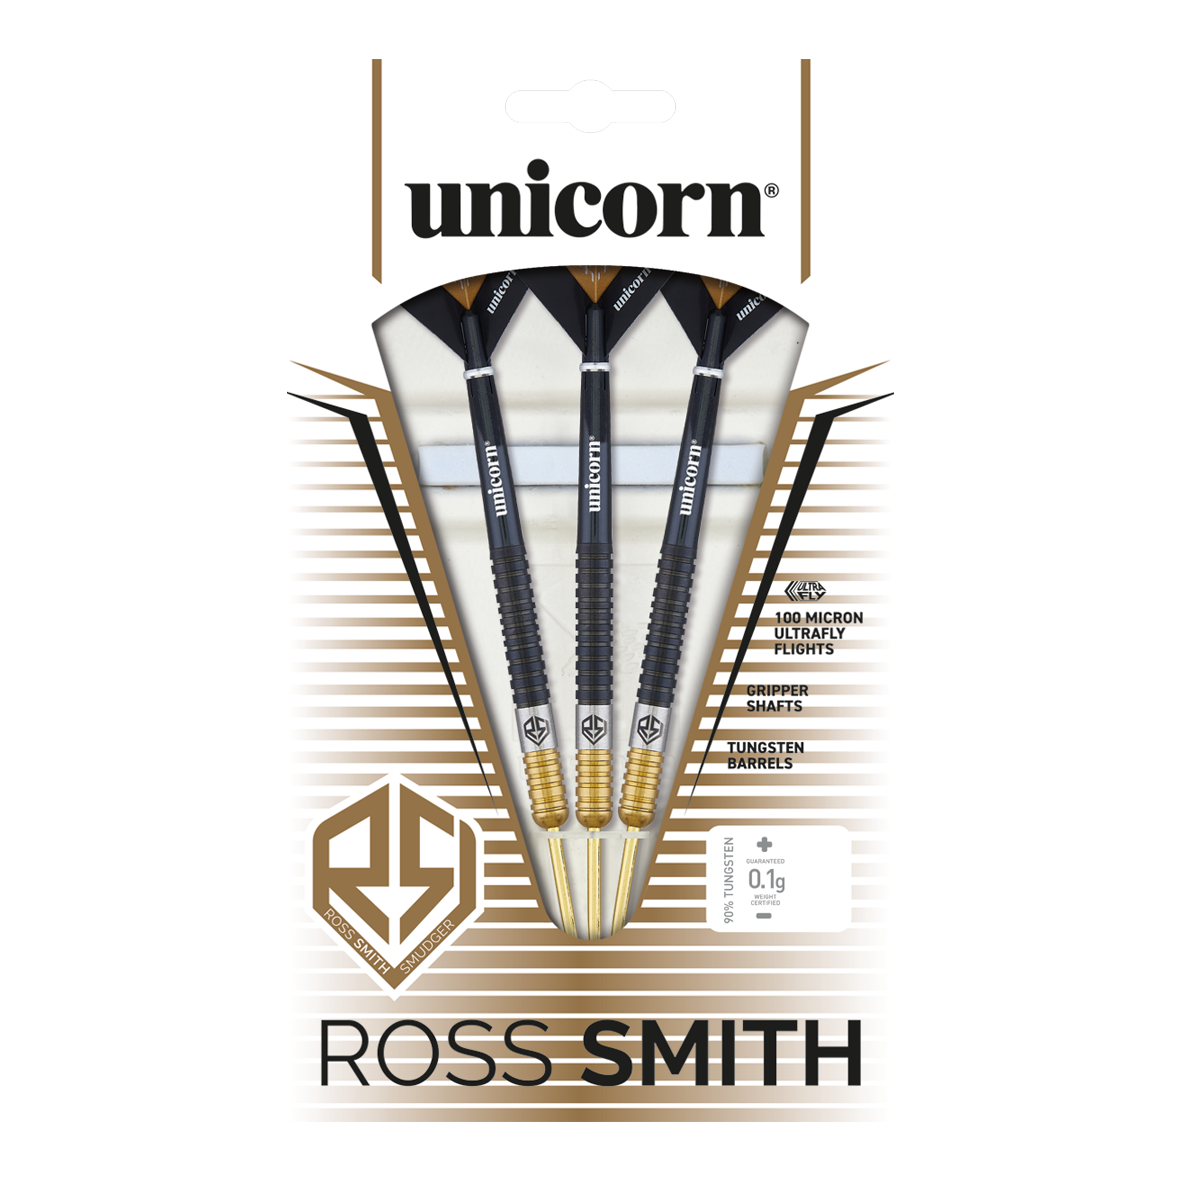 Fléchettes en acier bicolore Unicorn Ross Smith